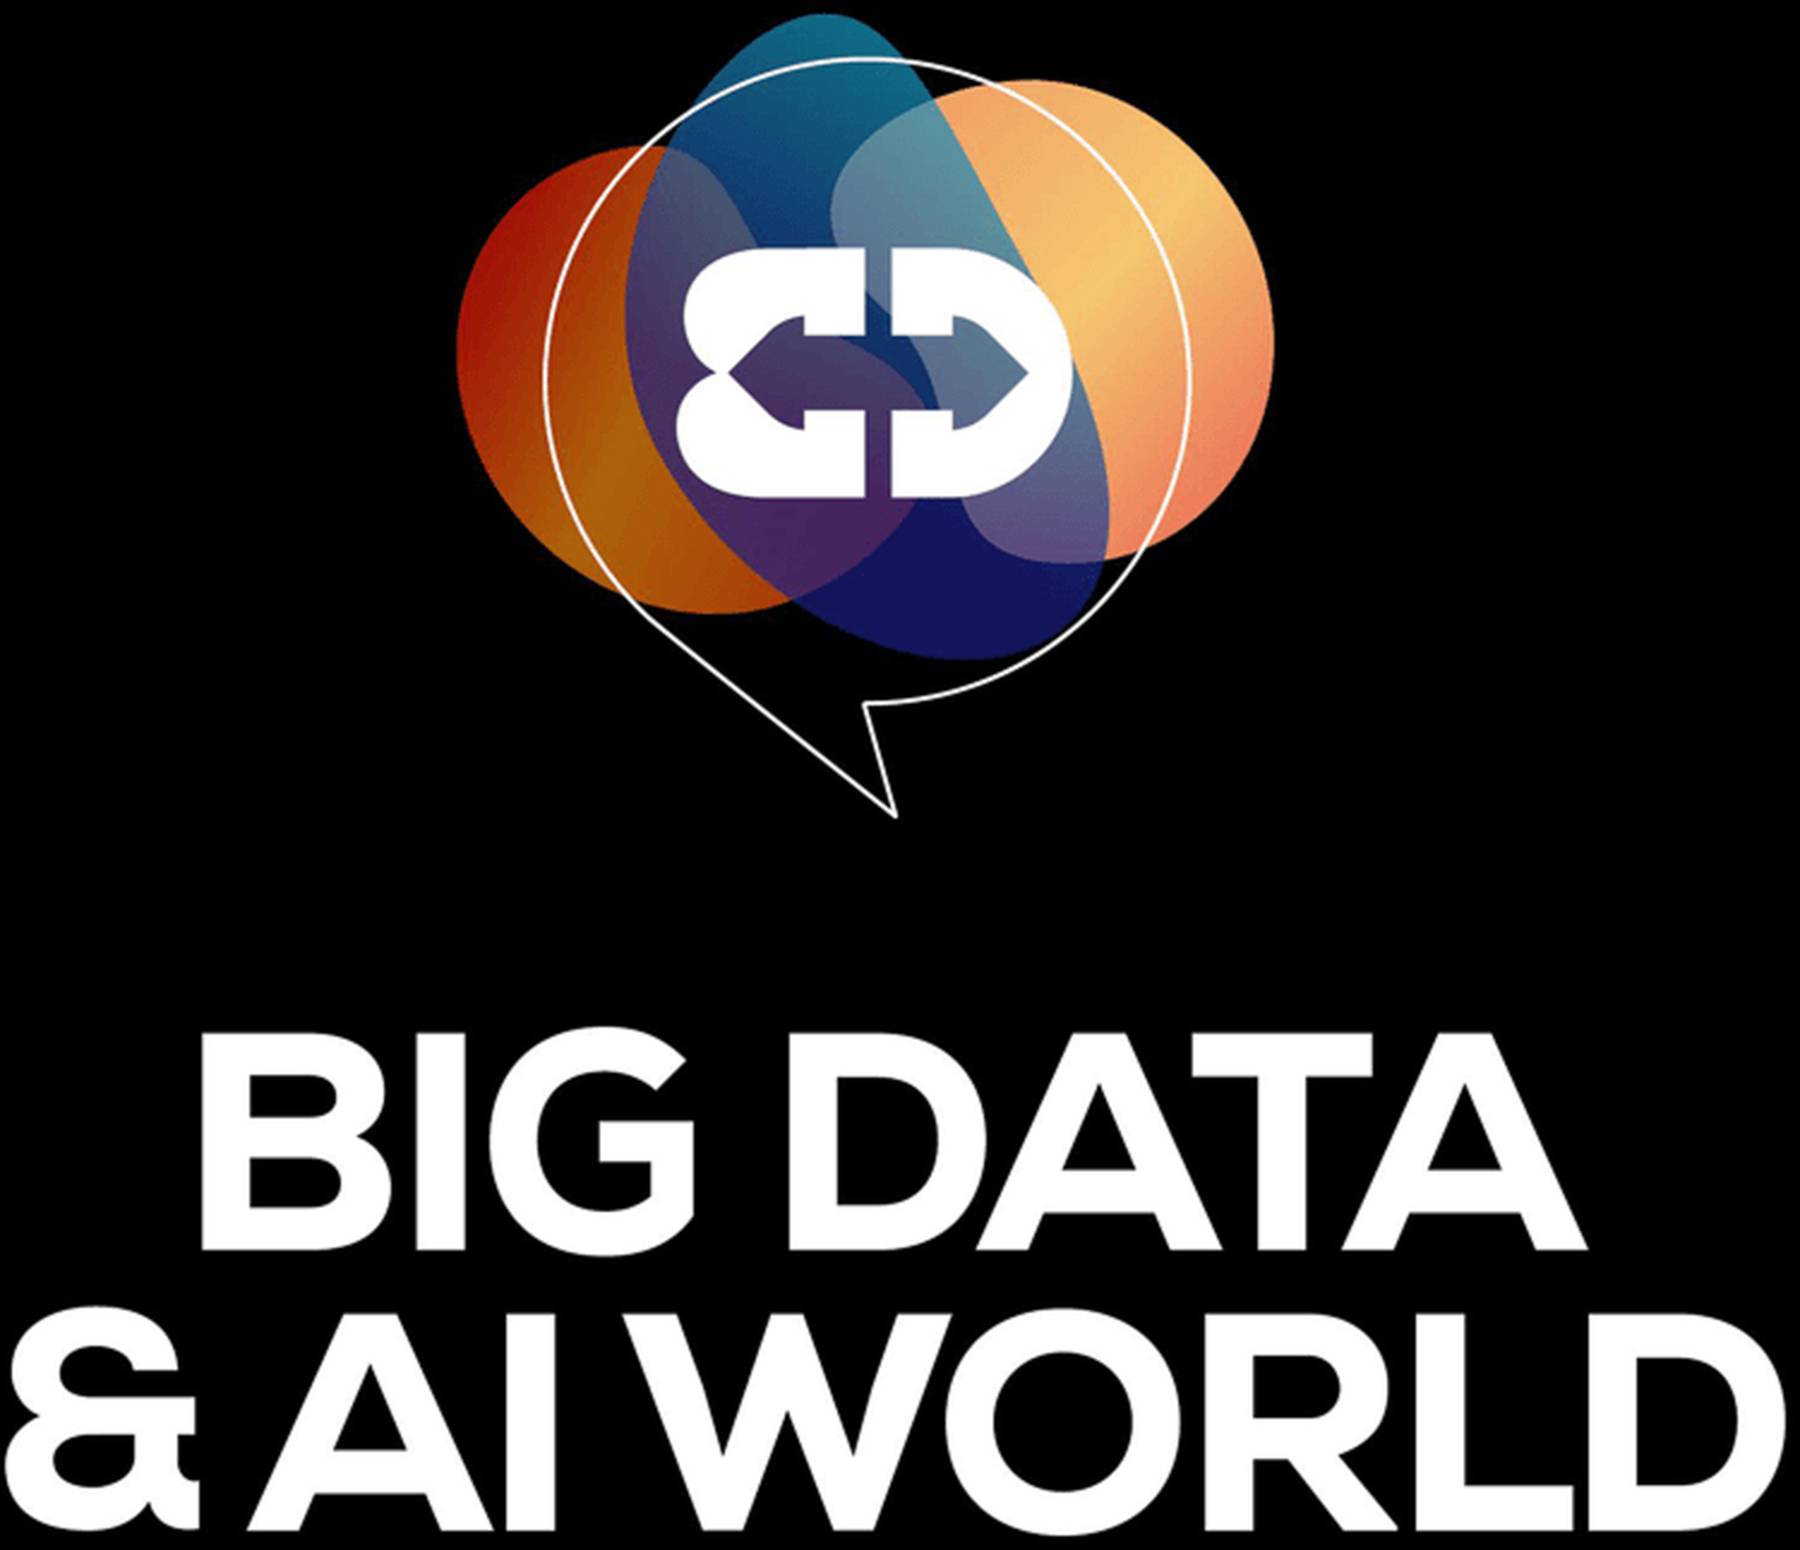 Big Data & AI World London 2020 